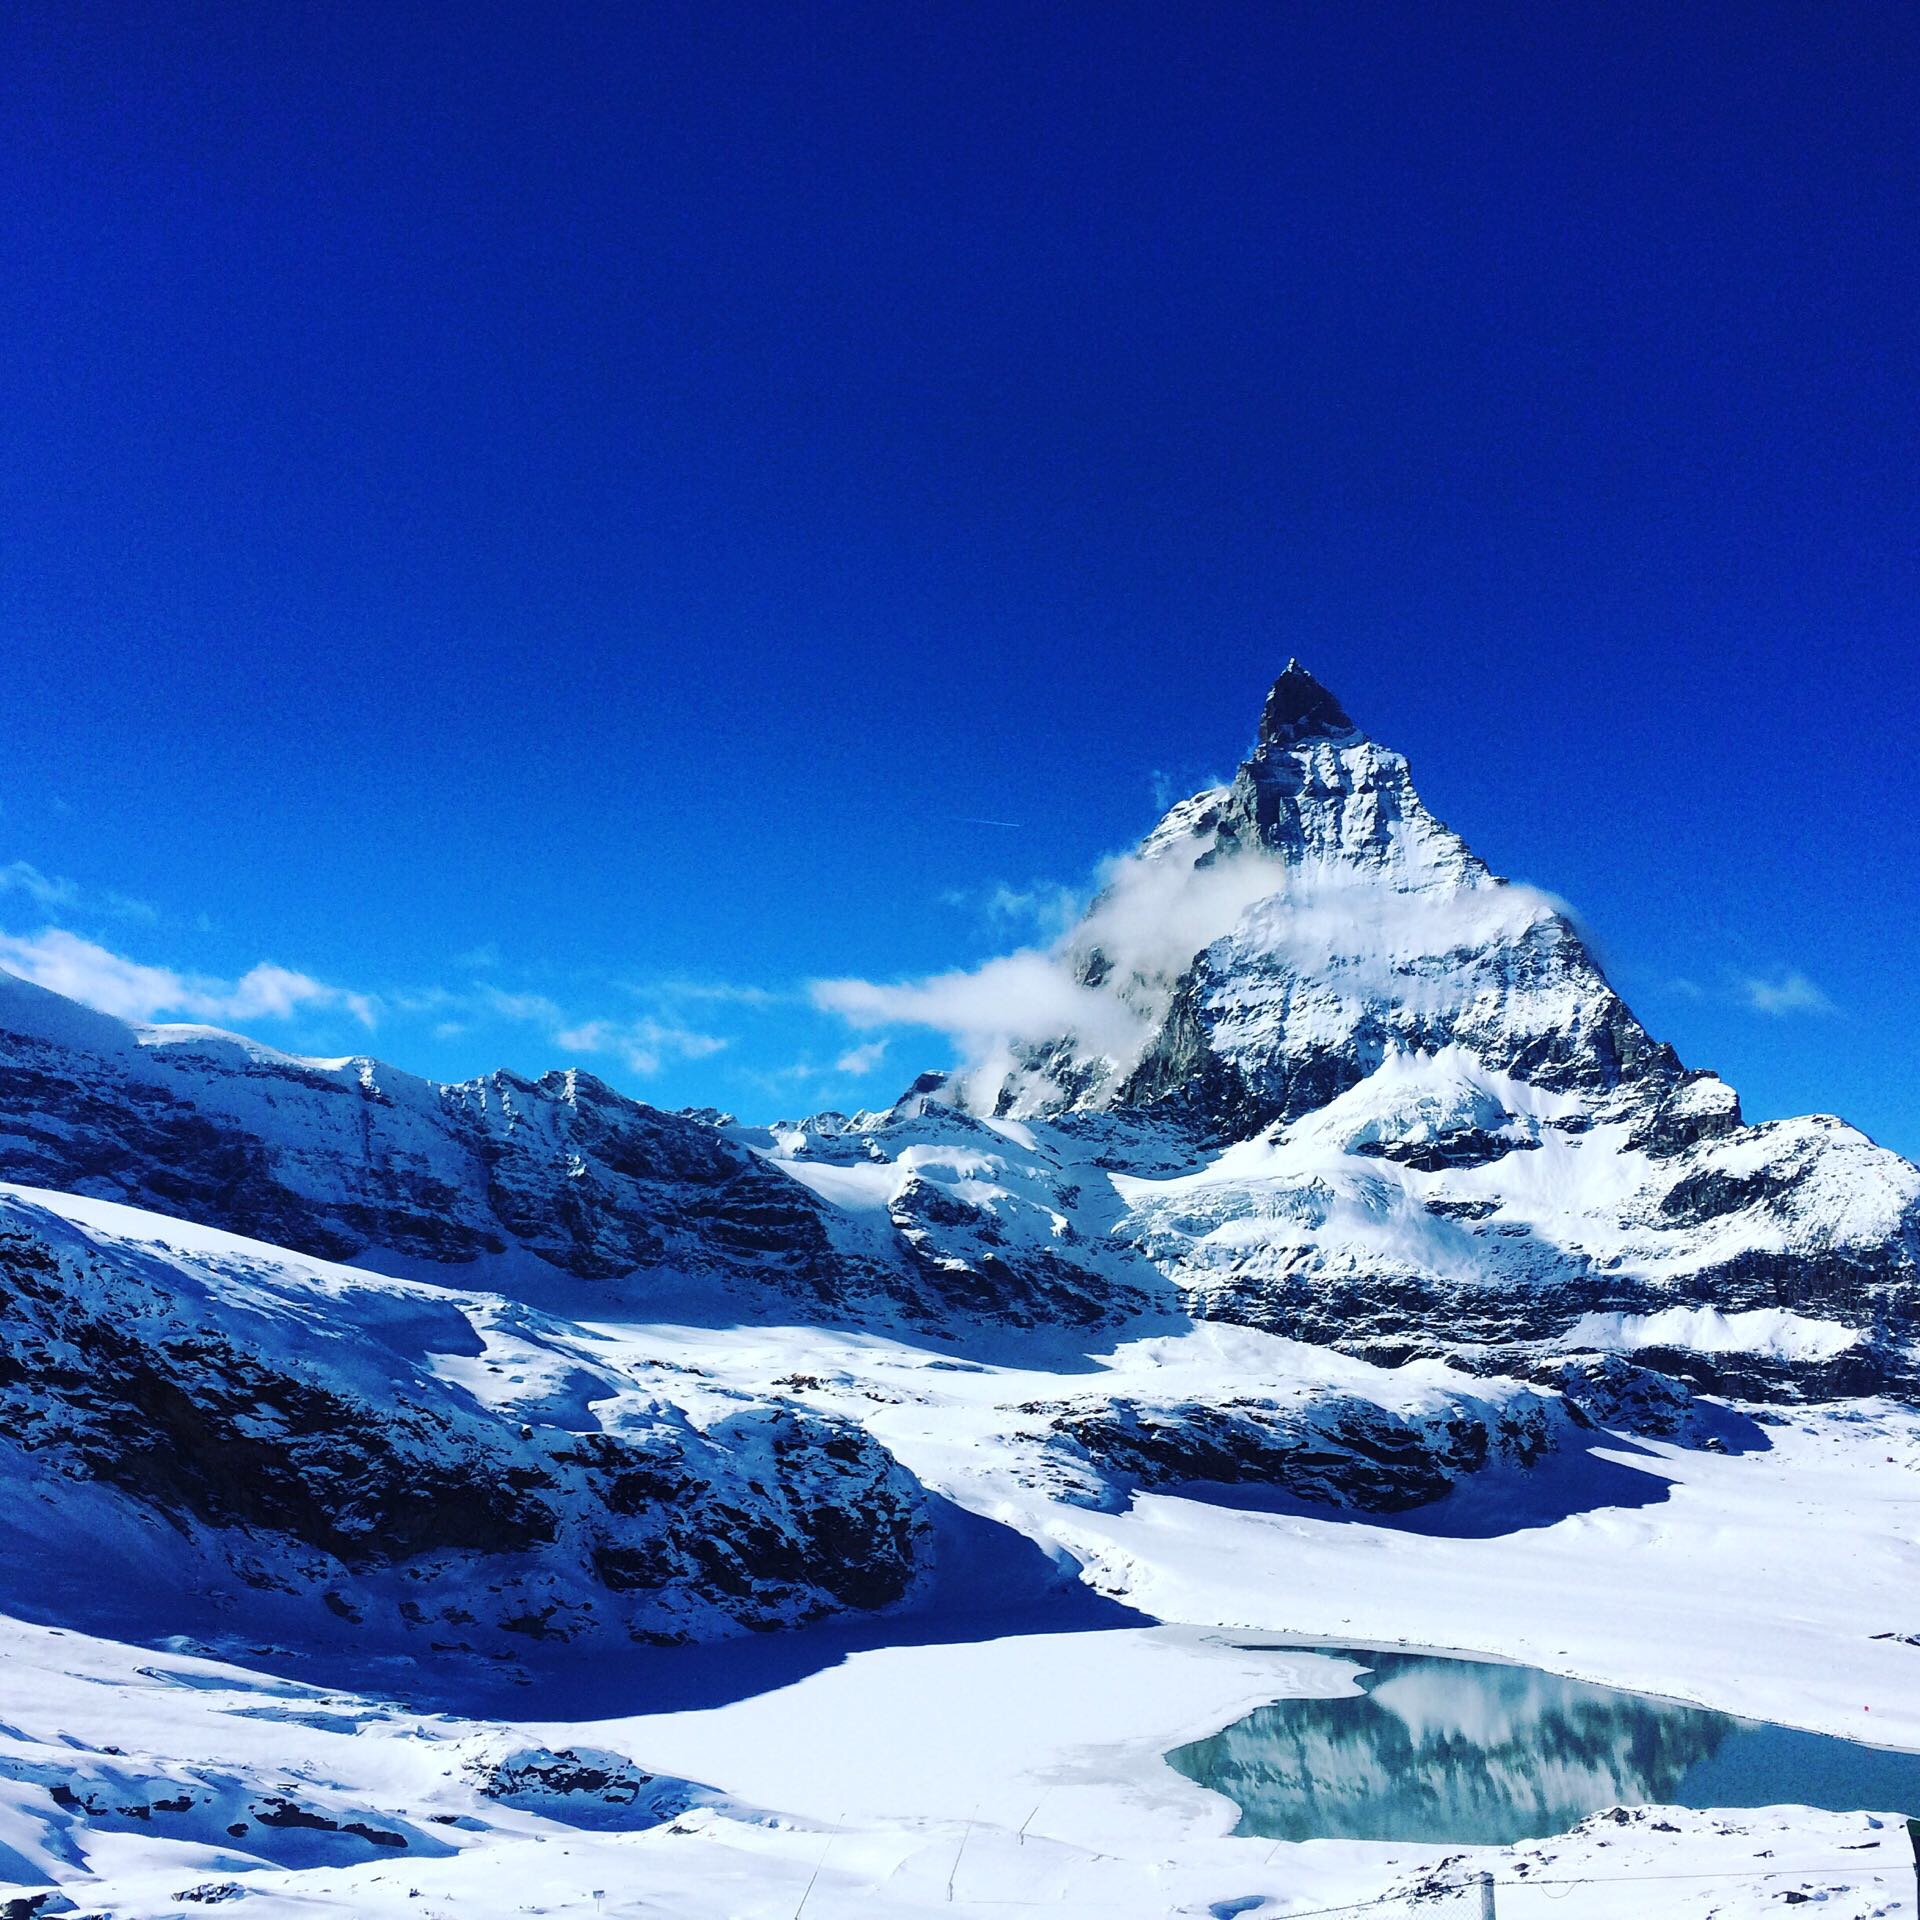 等一个晴天@Matterhorn